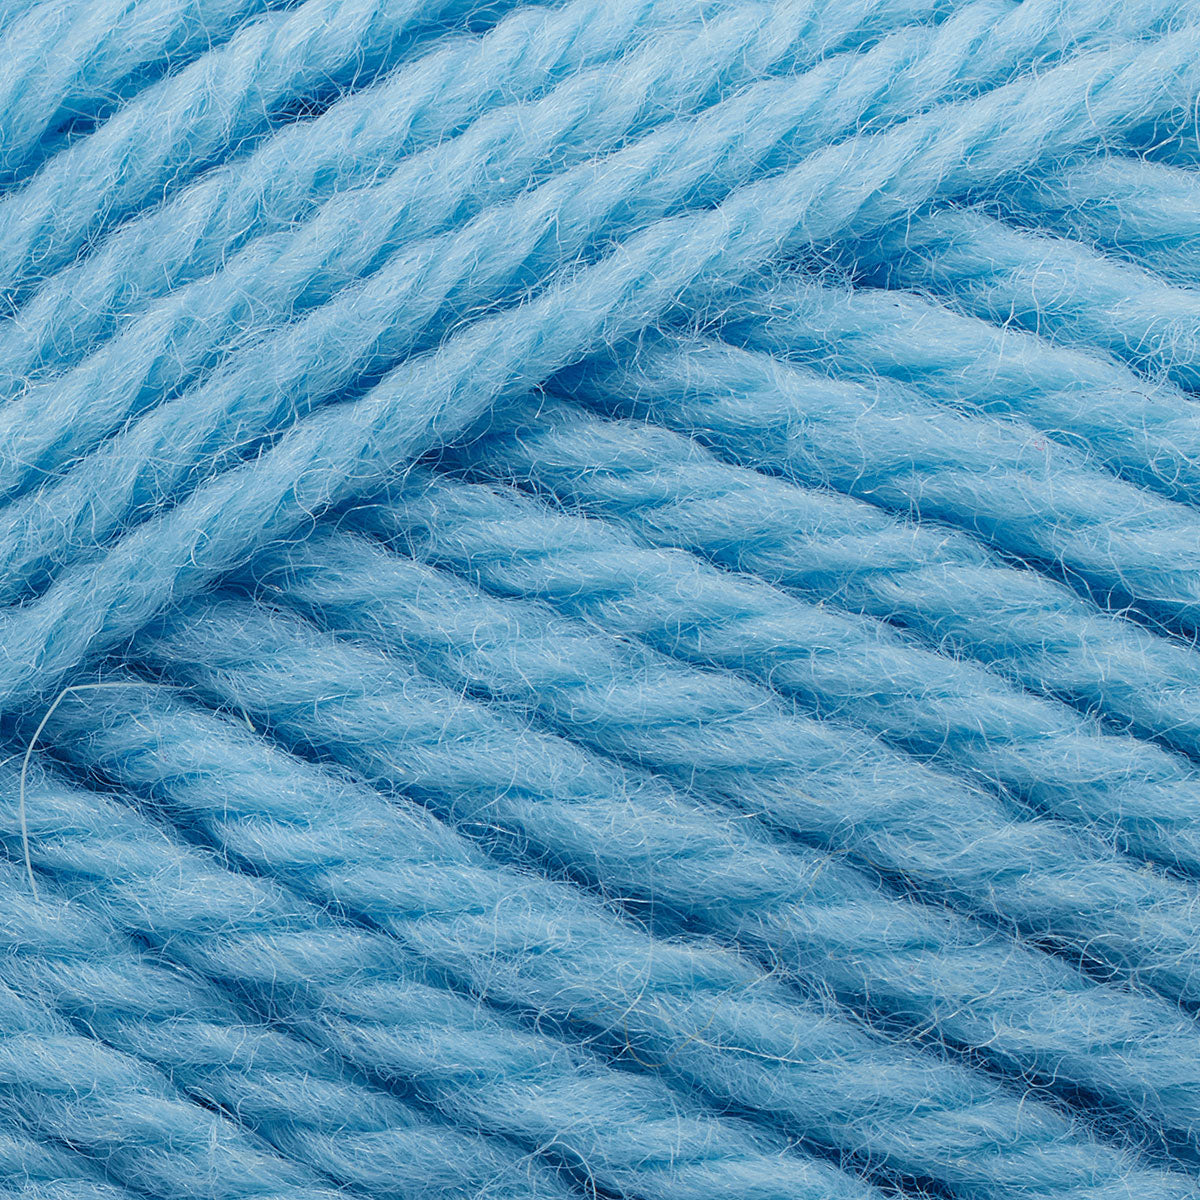 Peruvian Highland Wool alaskan blue [141]